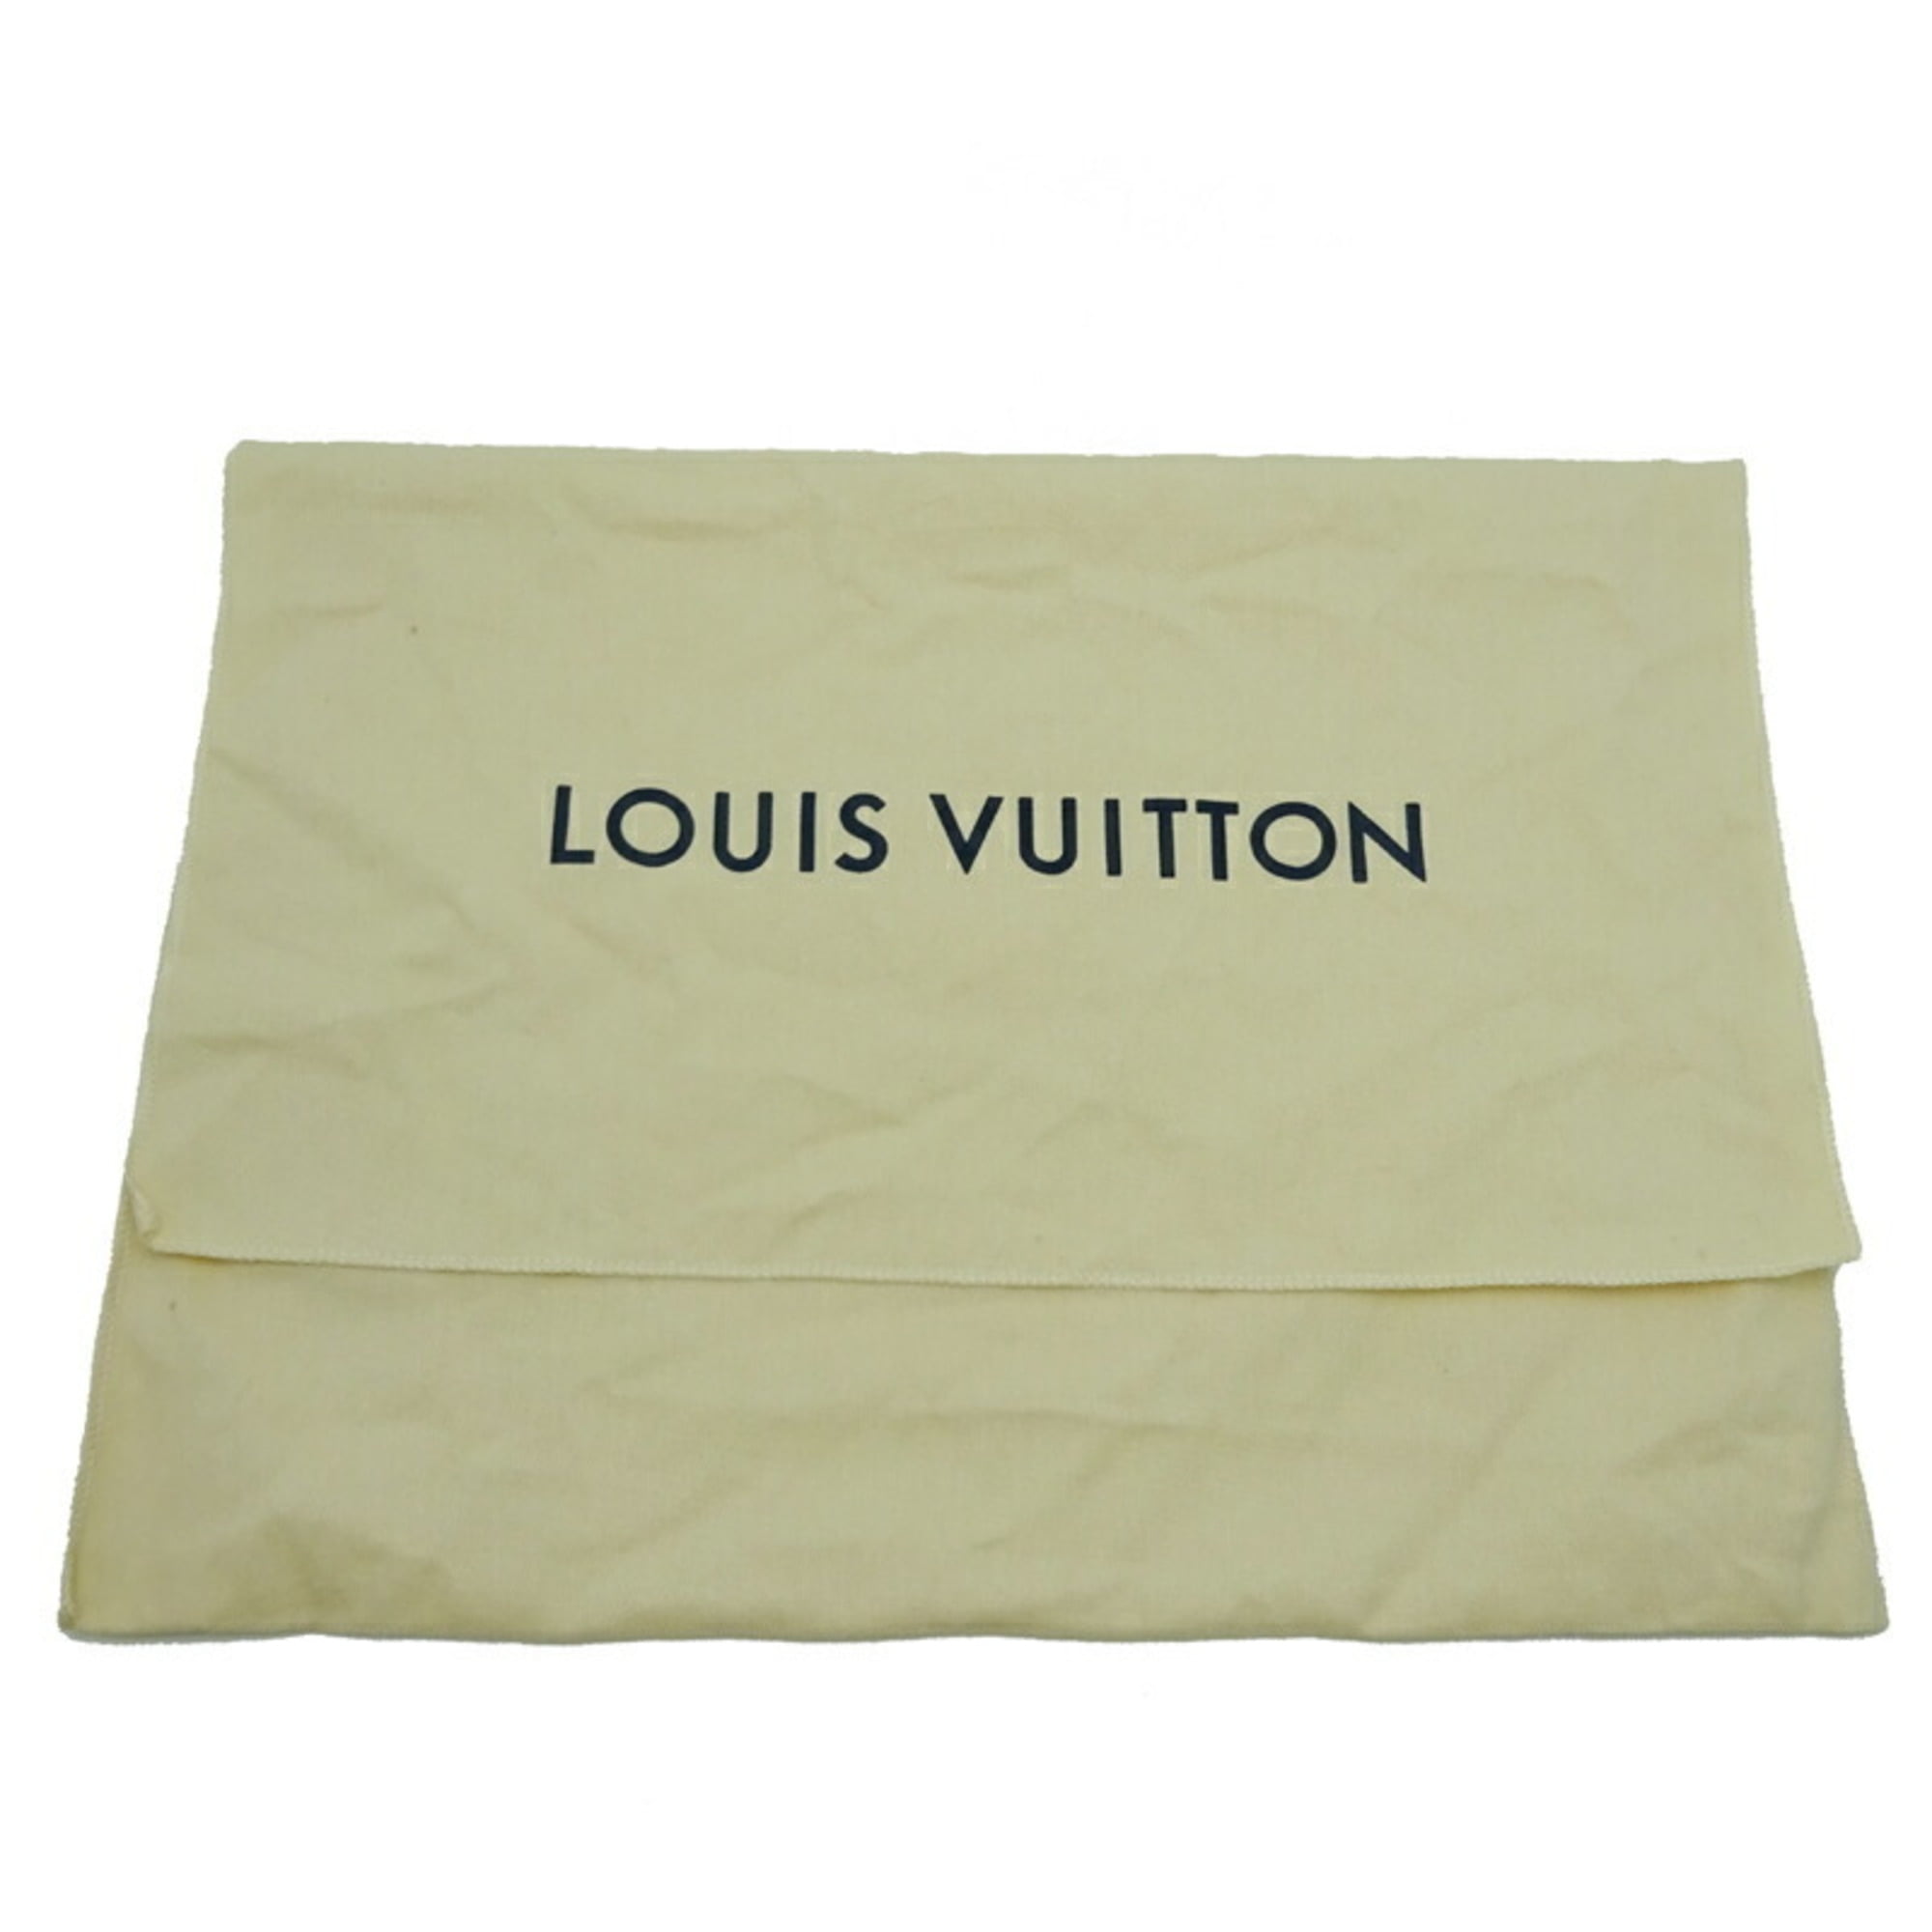 LOUIS VUITTON bam bag M42906 Bum bag Monogram Eclipse Black Black mens –